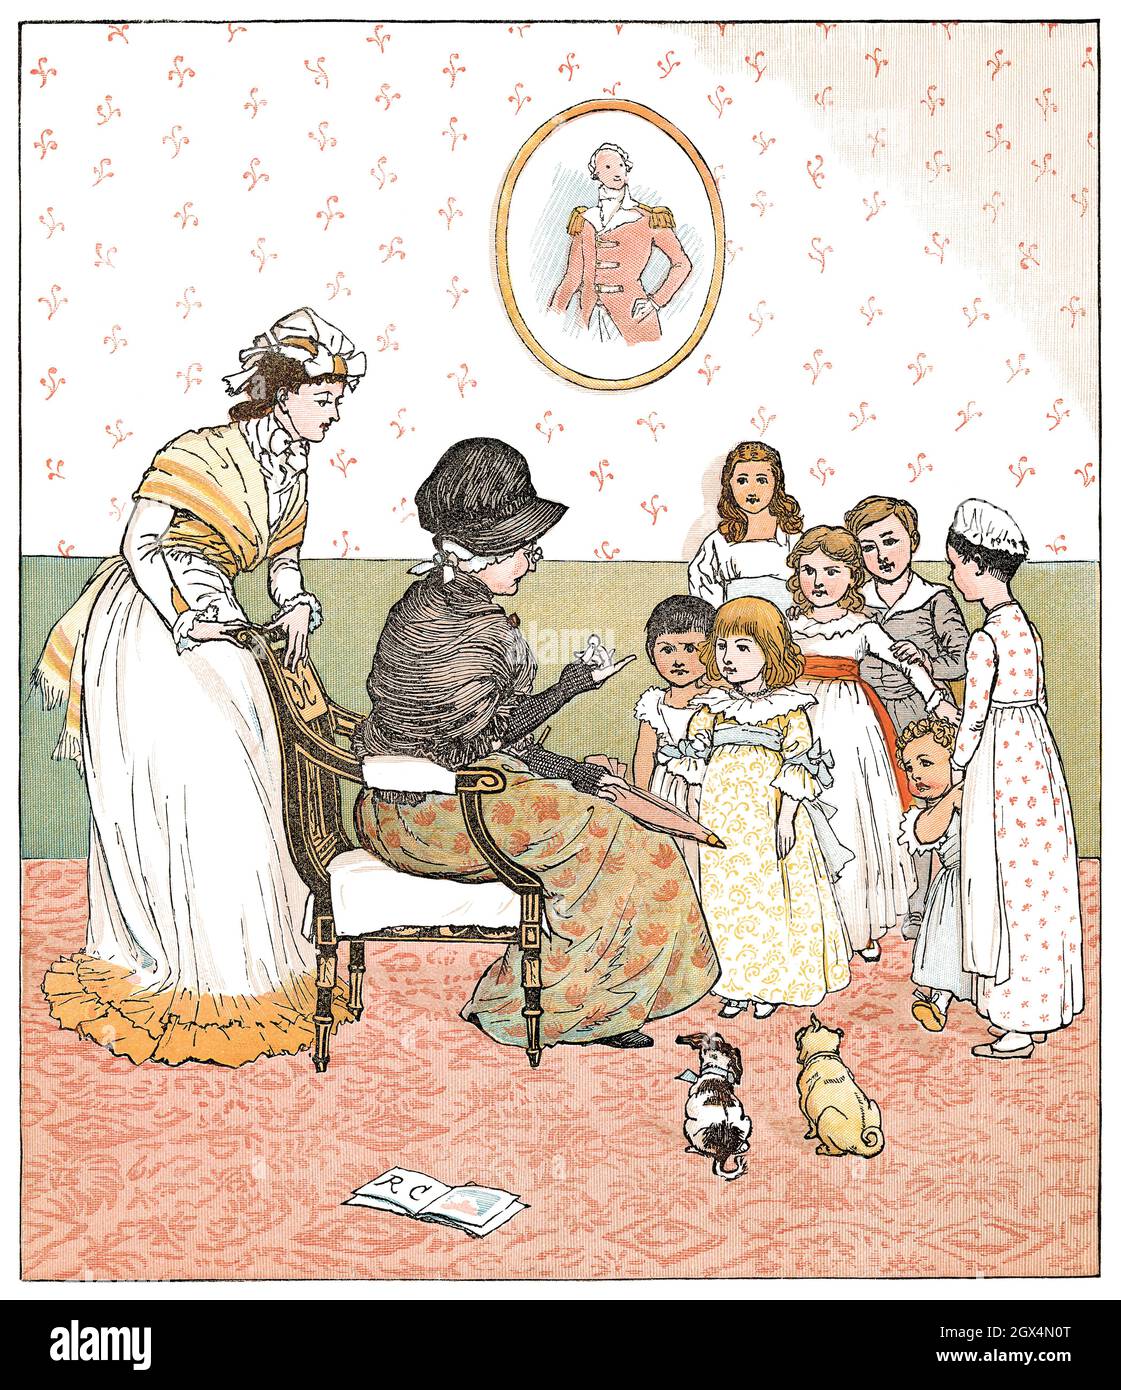 1880 illustration vintage par Randolph Caldecott pour la comptine rhyme Sing A Song of Sixpence. Banque D'Images